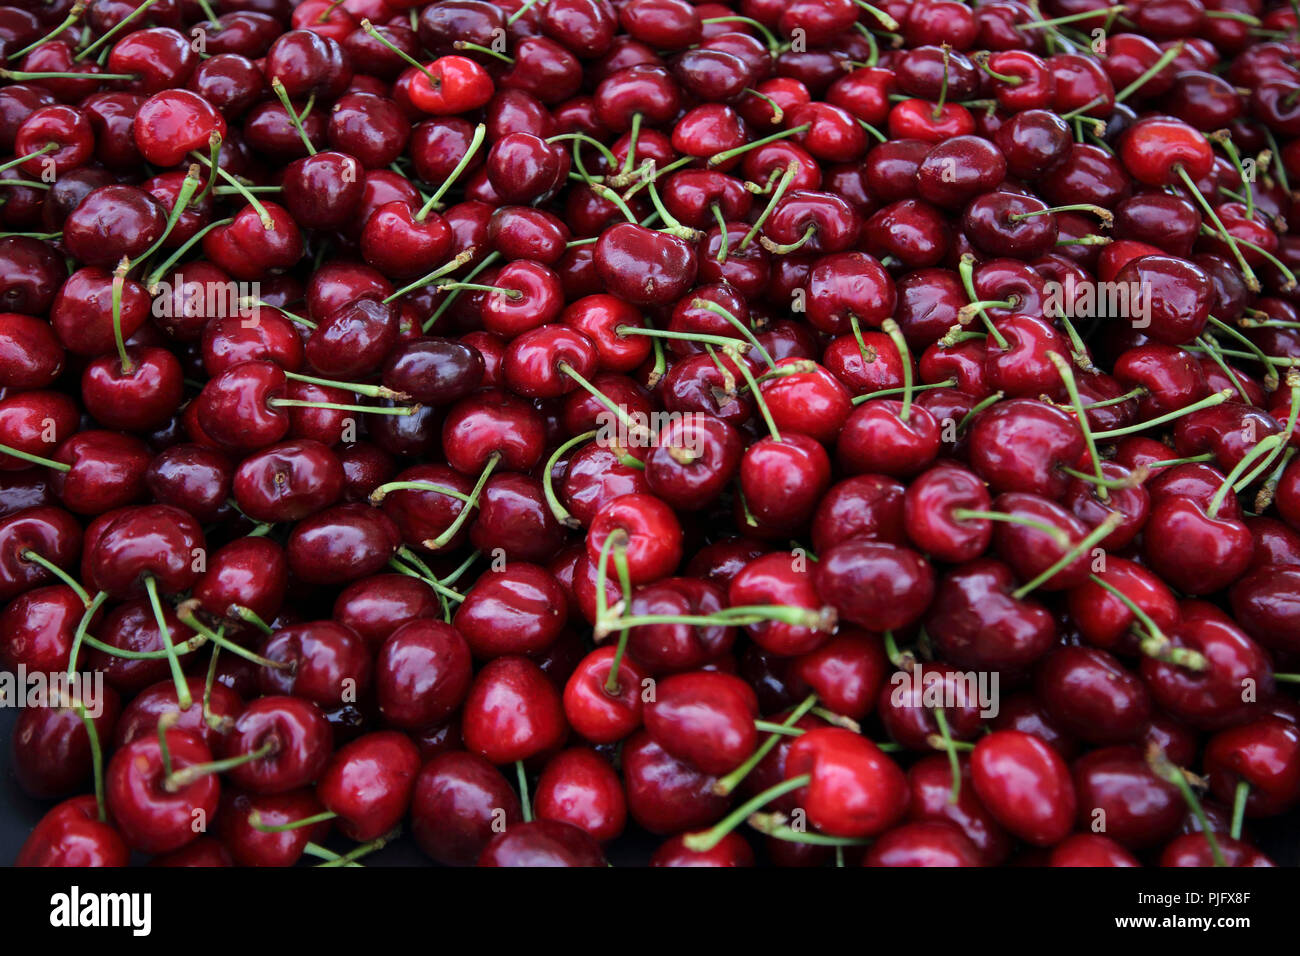 Vouliagmeni Atene Grecia Saturday Market Close Up di ciliege rosse Foto Stock